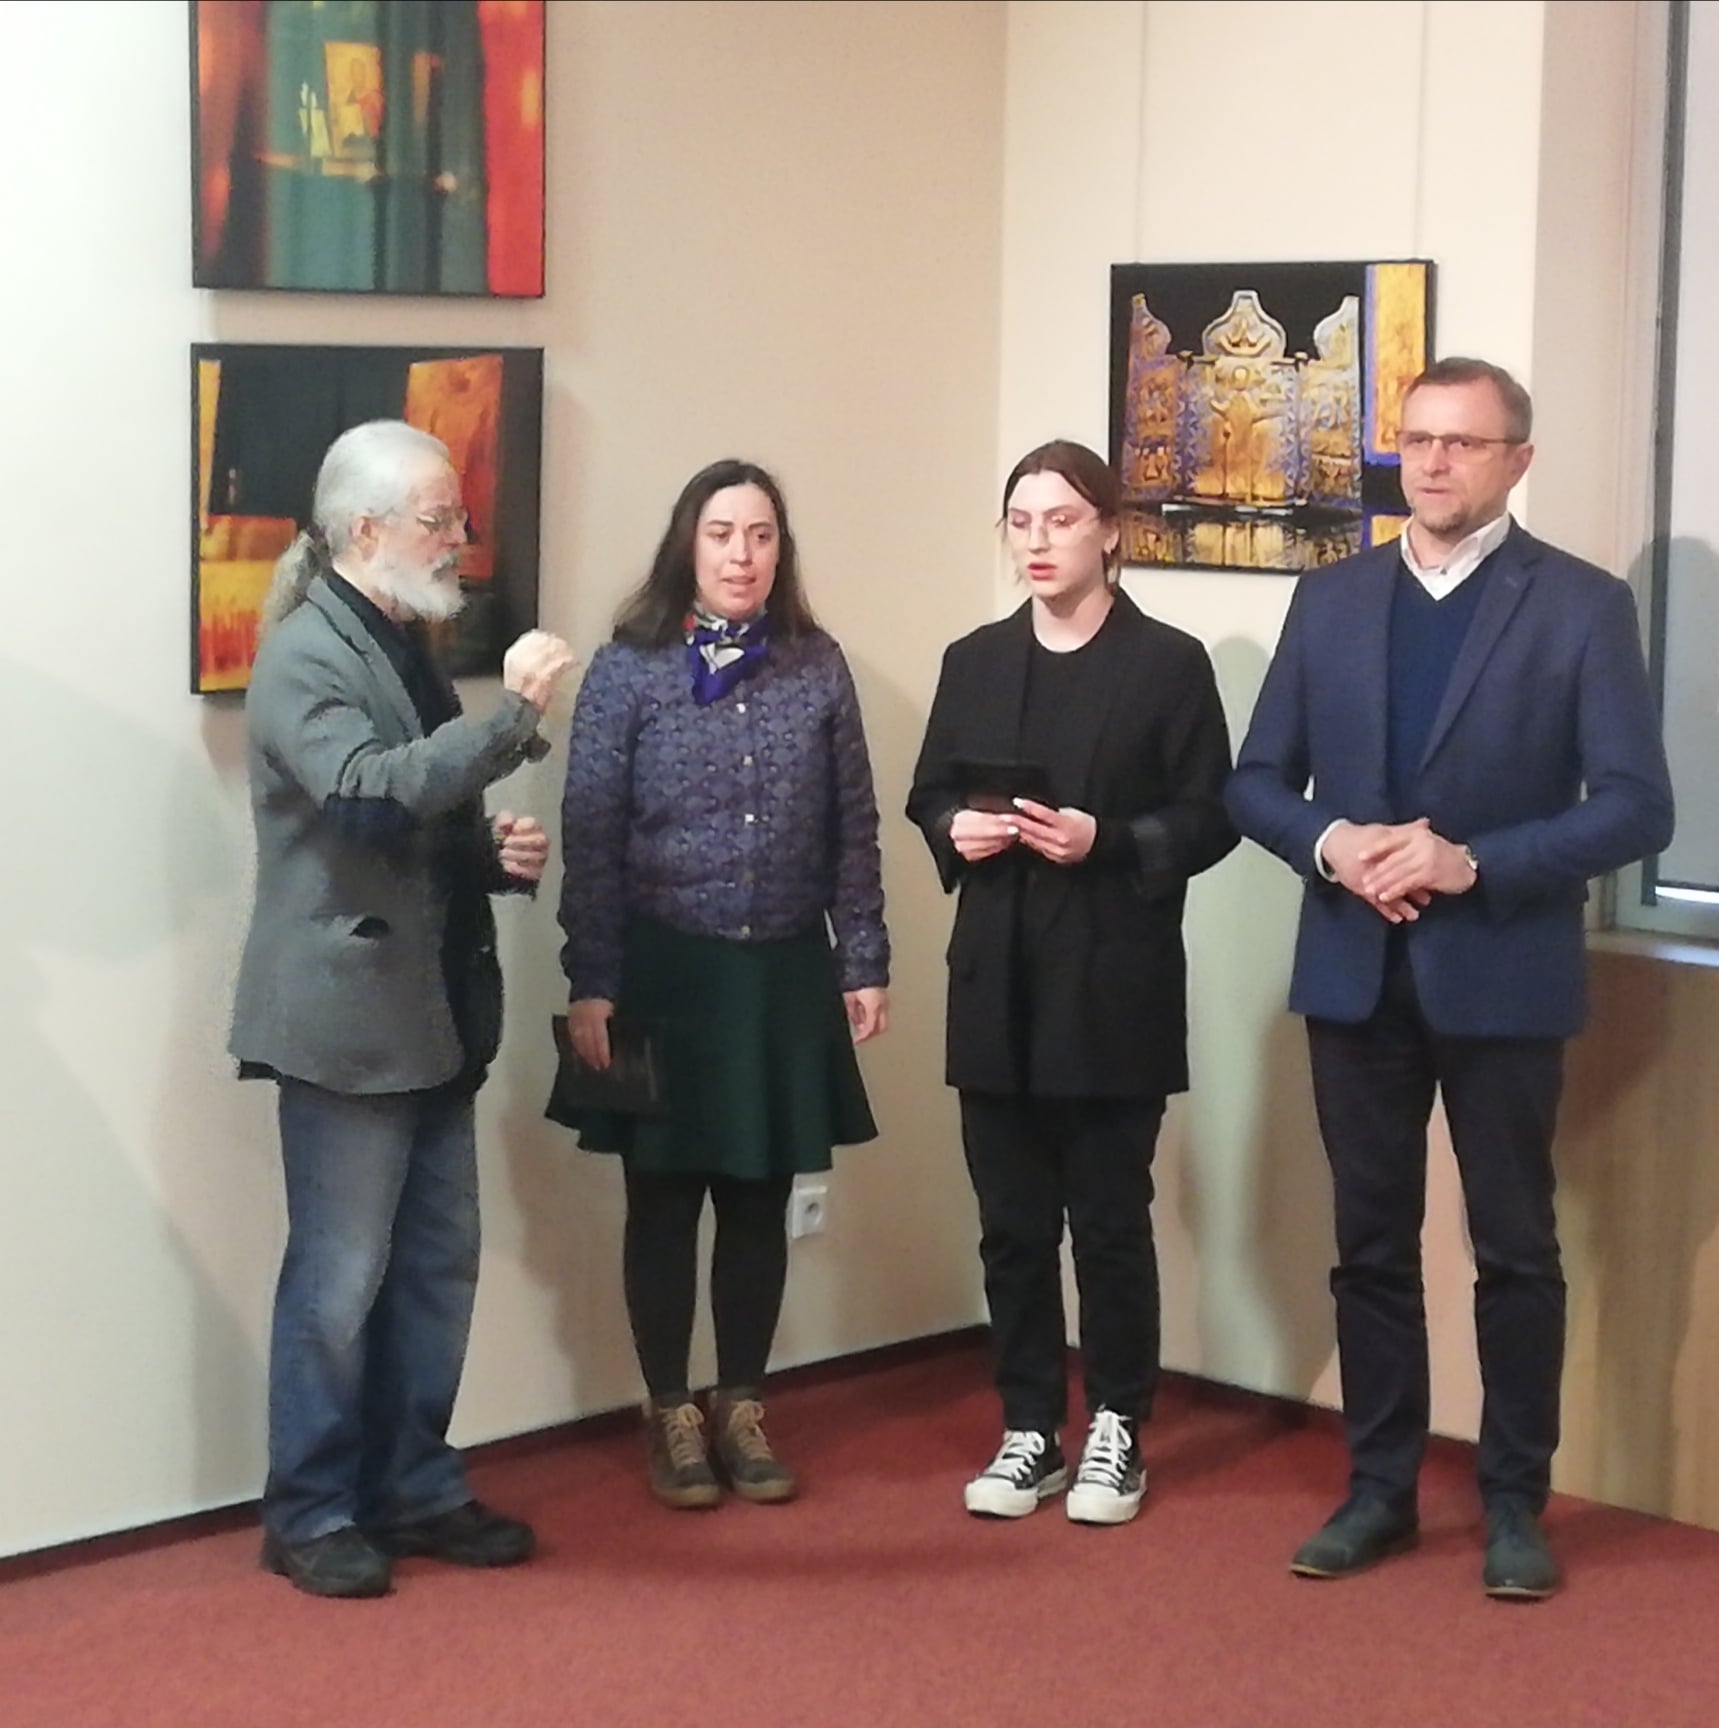 Wykonanie pieśni prawosławnych przez chór Parafii Św. Mikołaja w Kielcach (4 osoby) pod dyrekcją Jacka Dziubela.